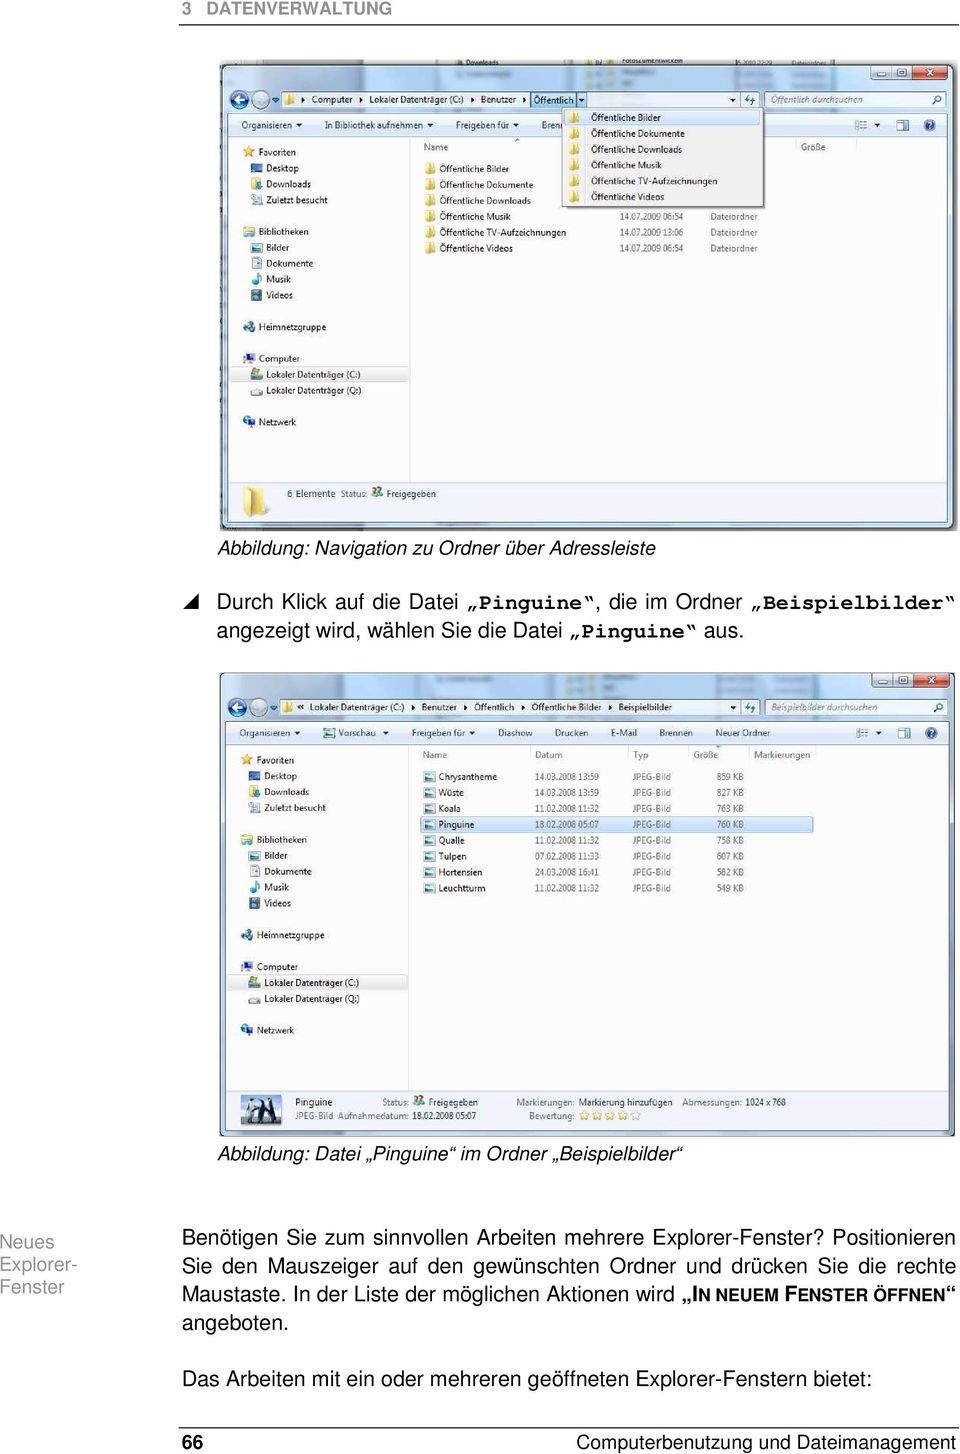 Abbildung: Datei Pinguine im Ordner Beispielbilder Neues Explorer- Fenster Benötigen Sie zum sinnvollen Arbeiten mehrere Explorer-Fenster?